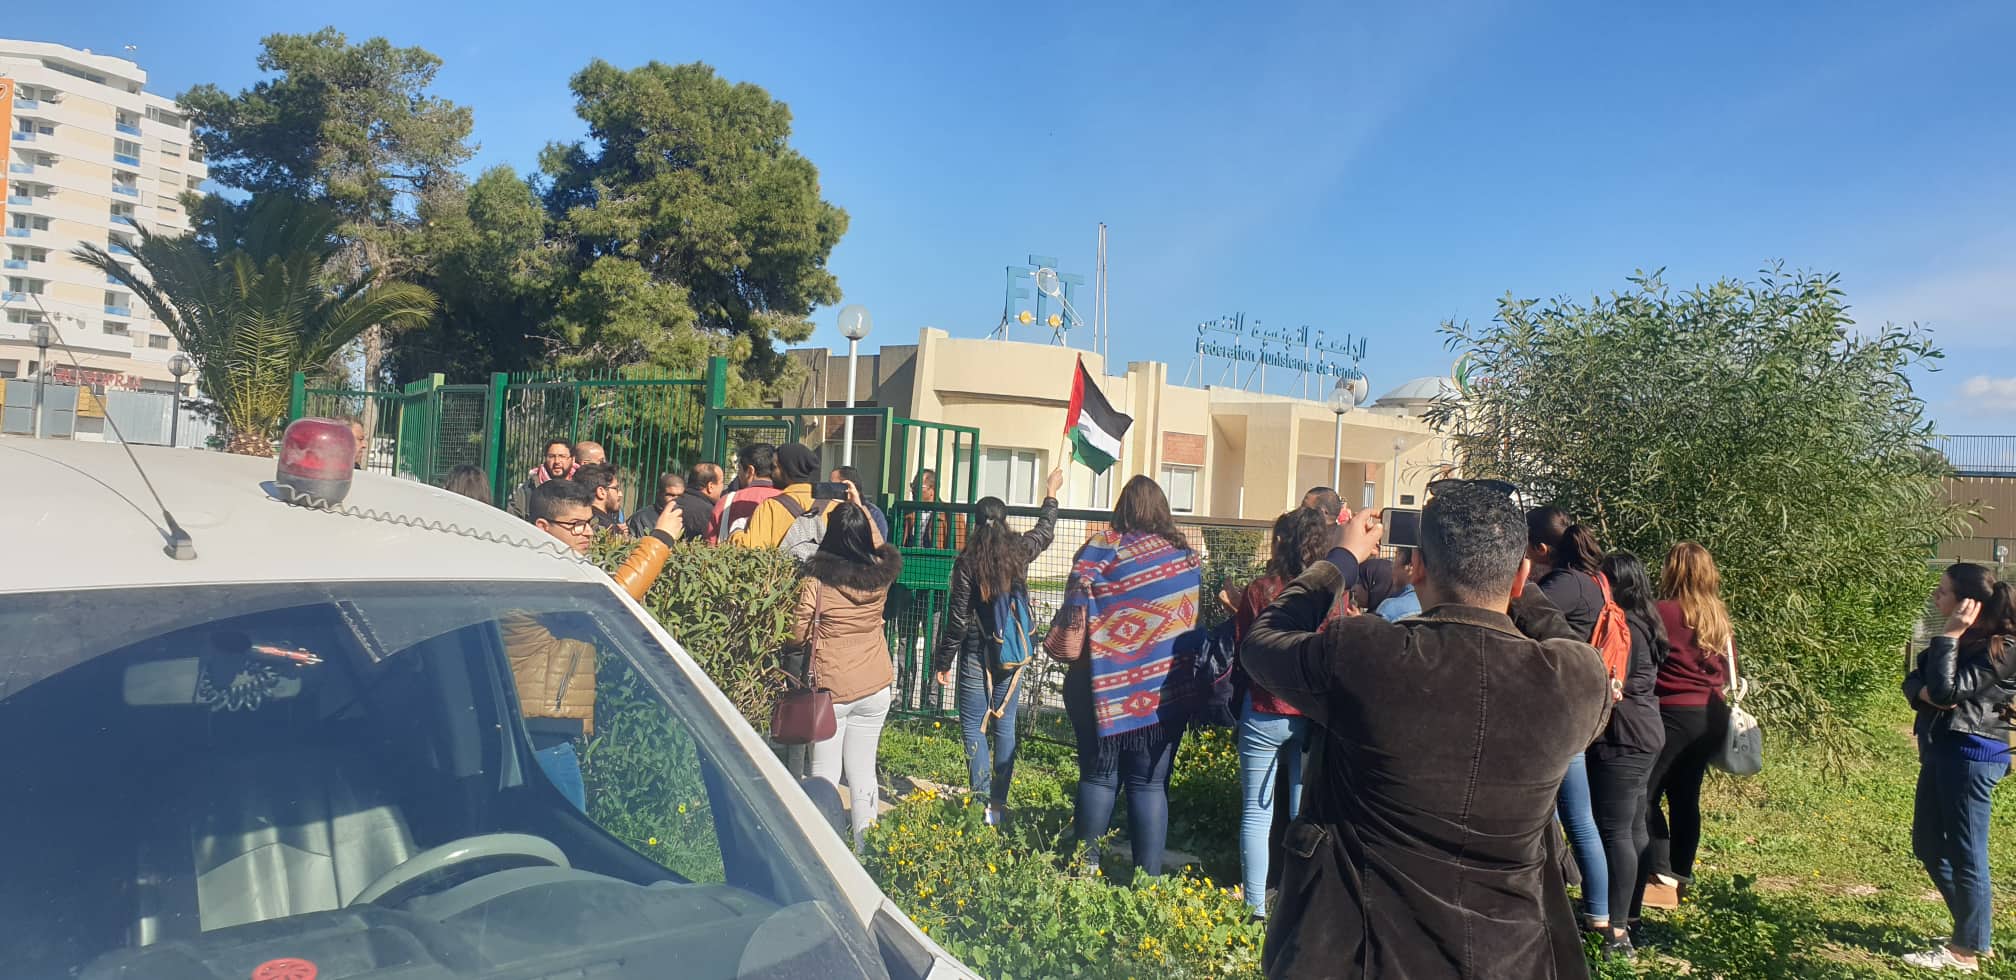  Rassemblement de protestation contre la participation d’un joueur israélien au tournoi de Tunis